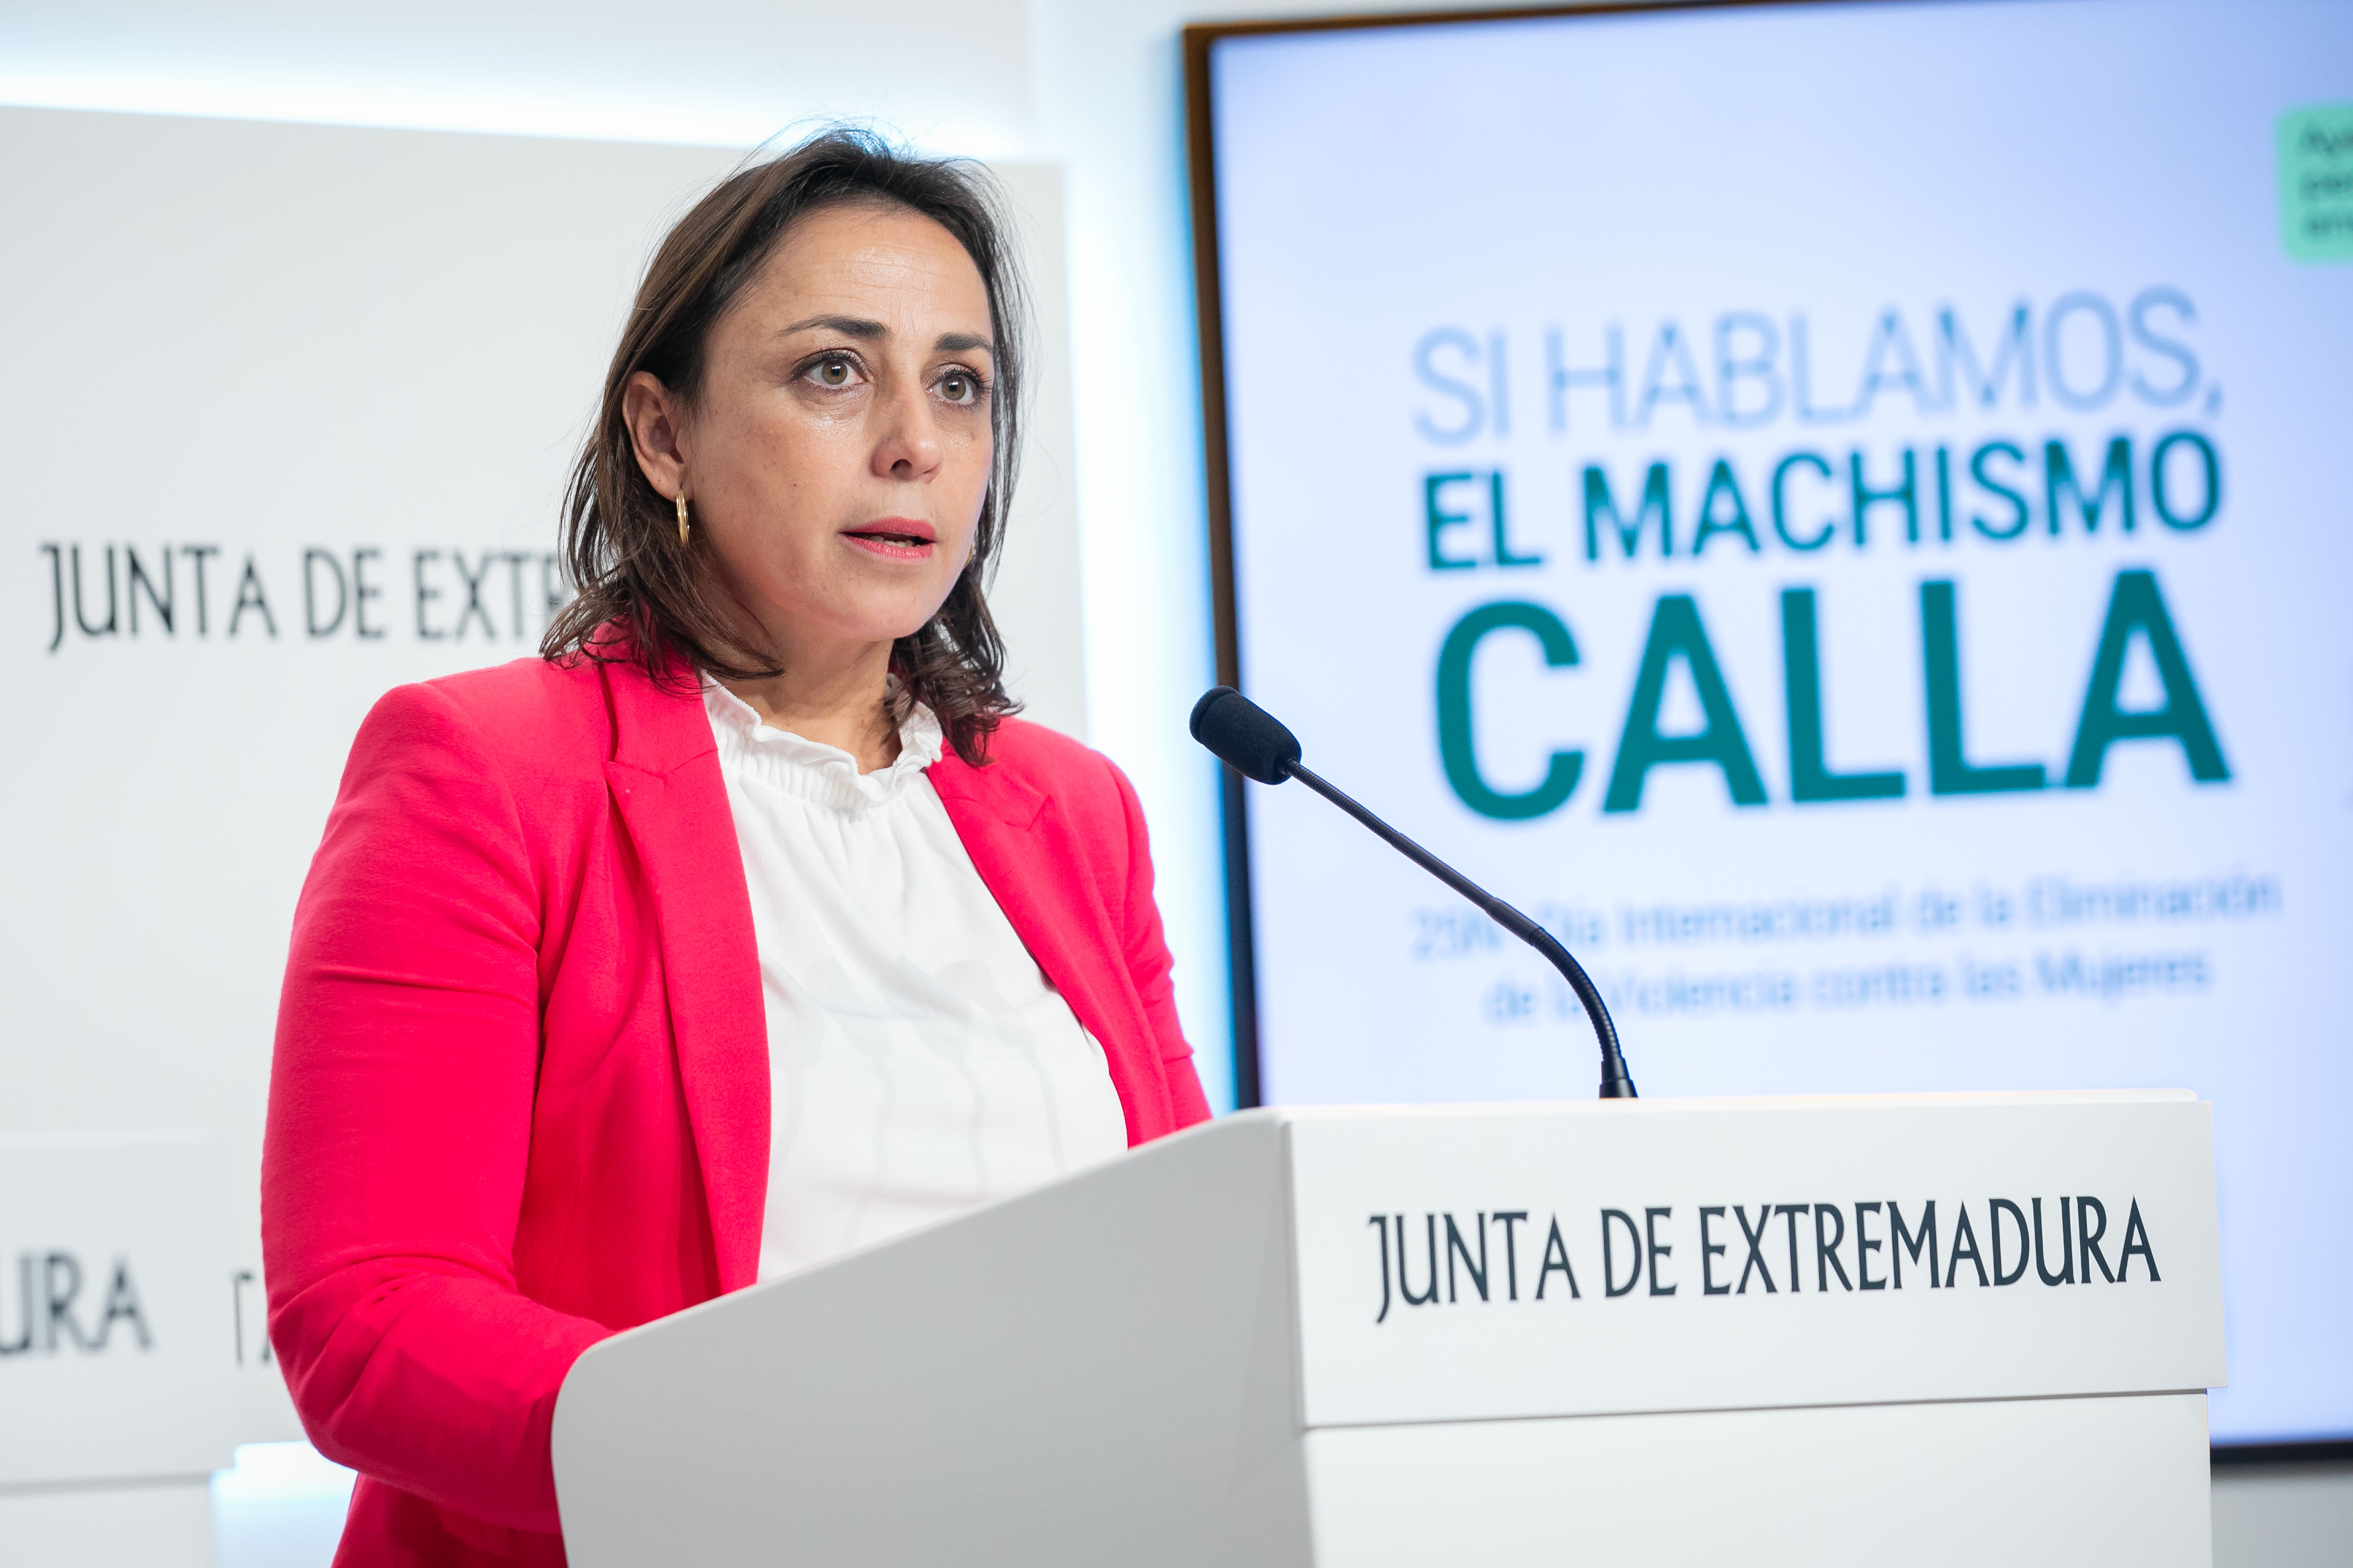 Image 2 of article Si hablamos, el machismo calla, lema elegido por la Junta de Extremadura para la campaña del 25 de noviembre